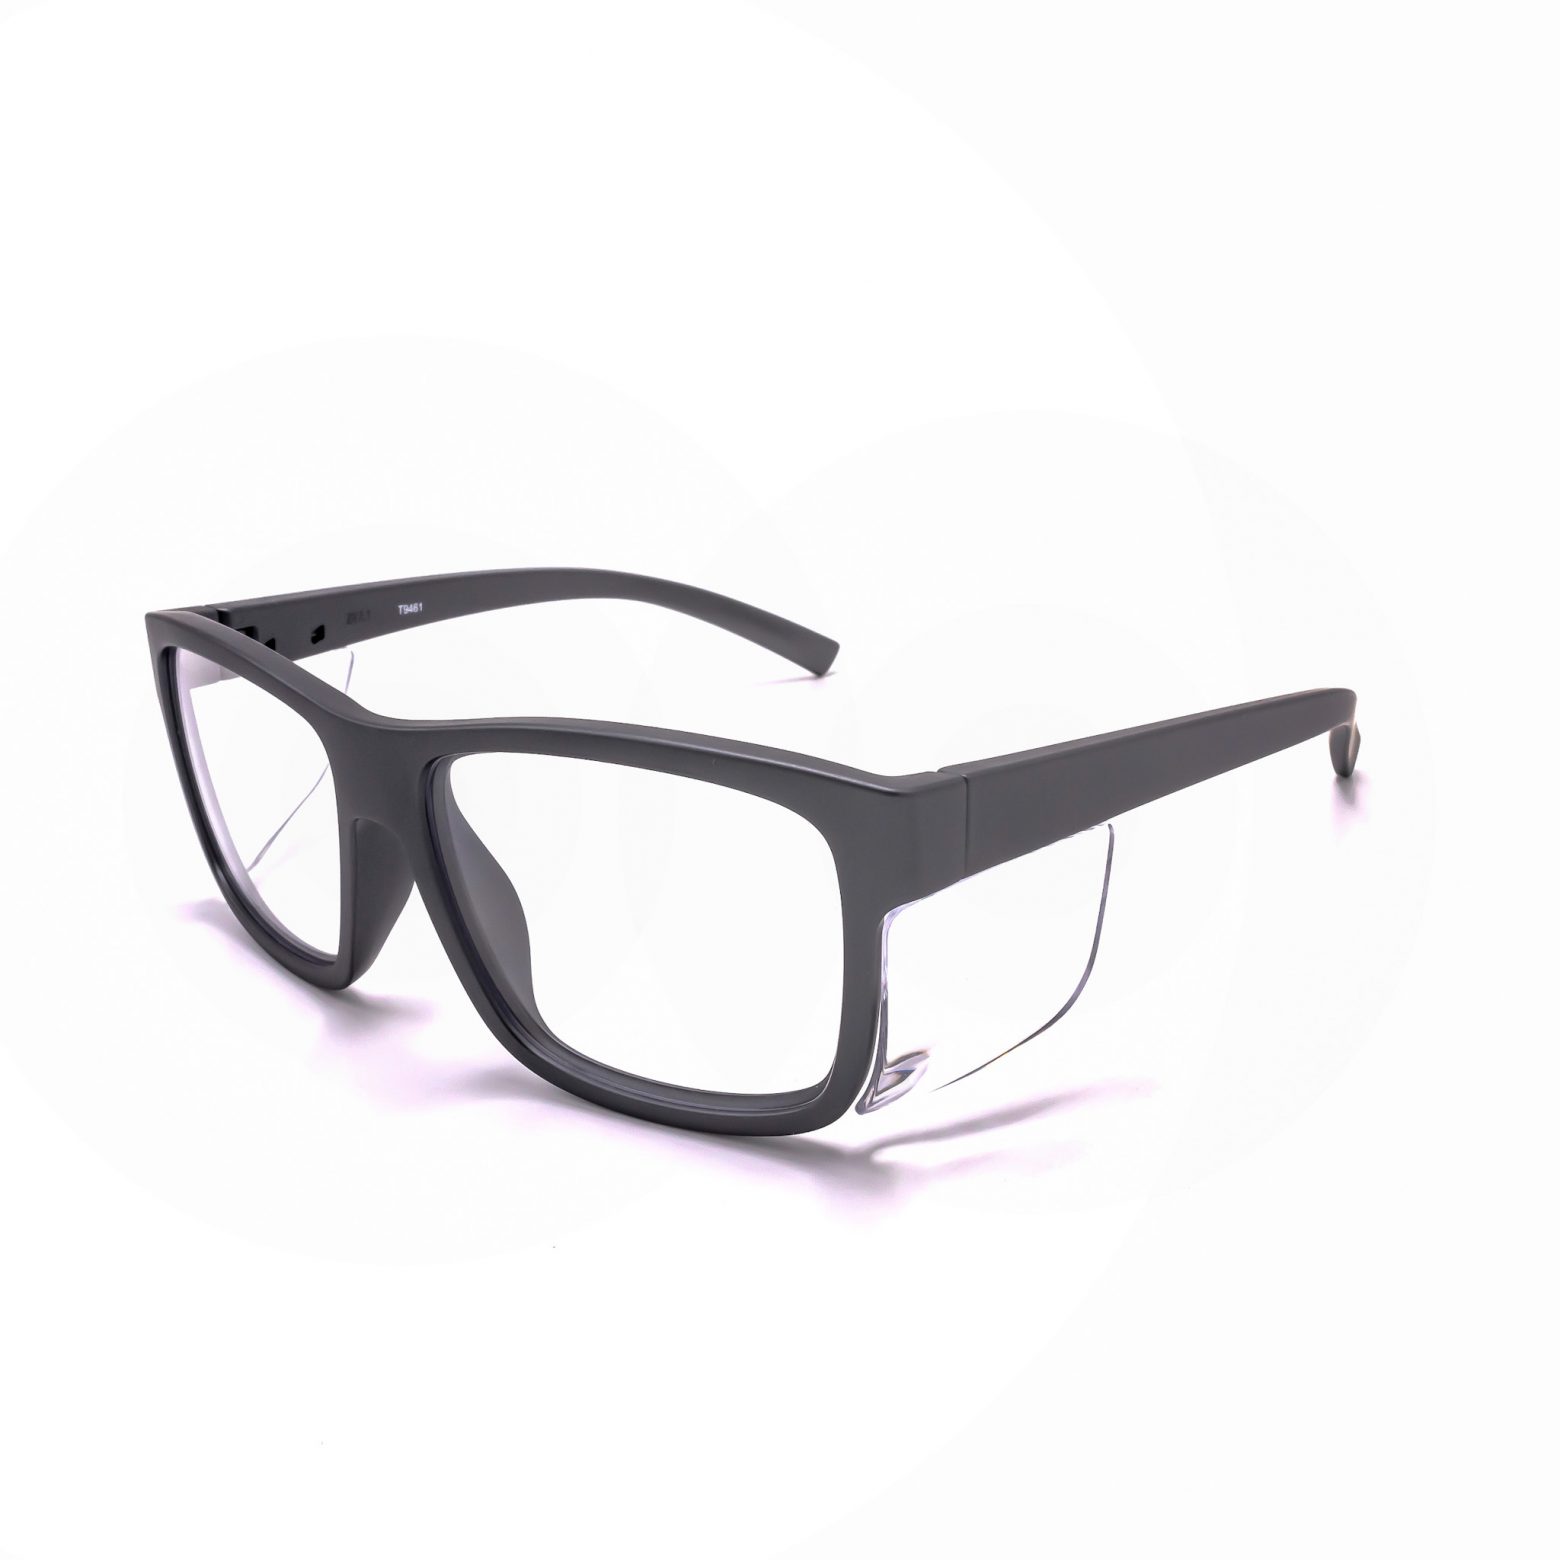 Walker's Impact Resistant Sport Glasses Amber Lens, ANSI Z87.1 Rating,  New NIP